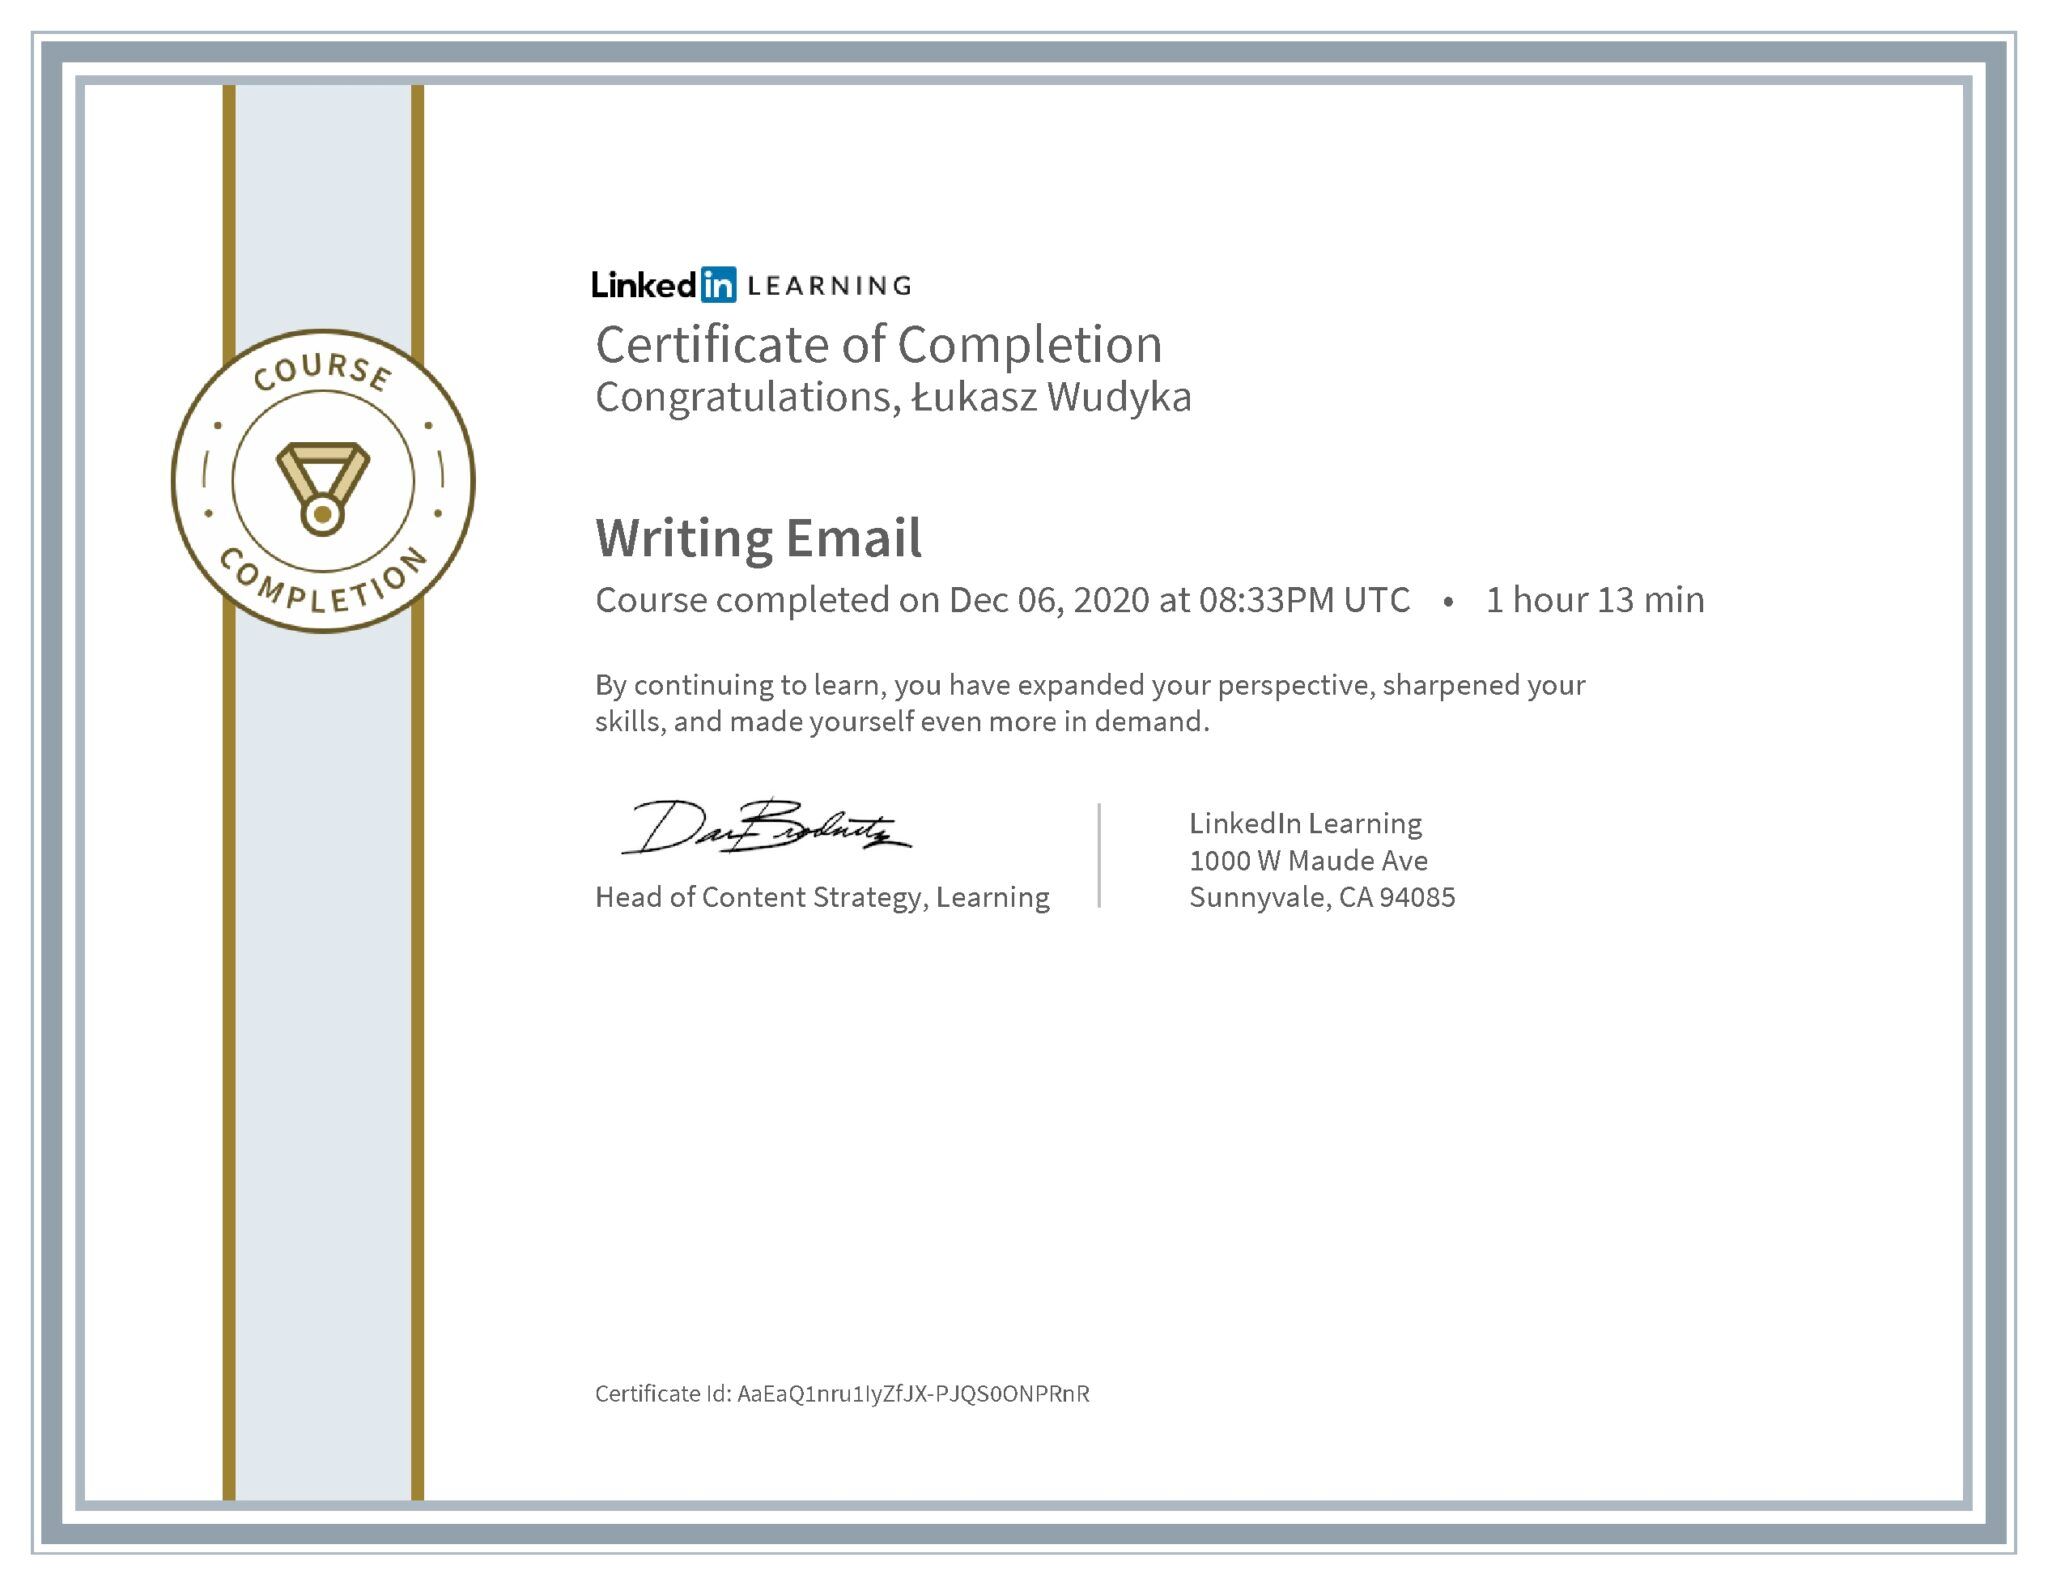 Łukasz Wudyka certyfikat LinkedIn Writing Email